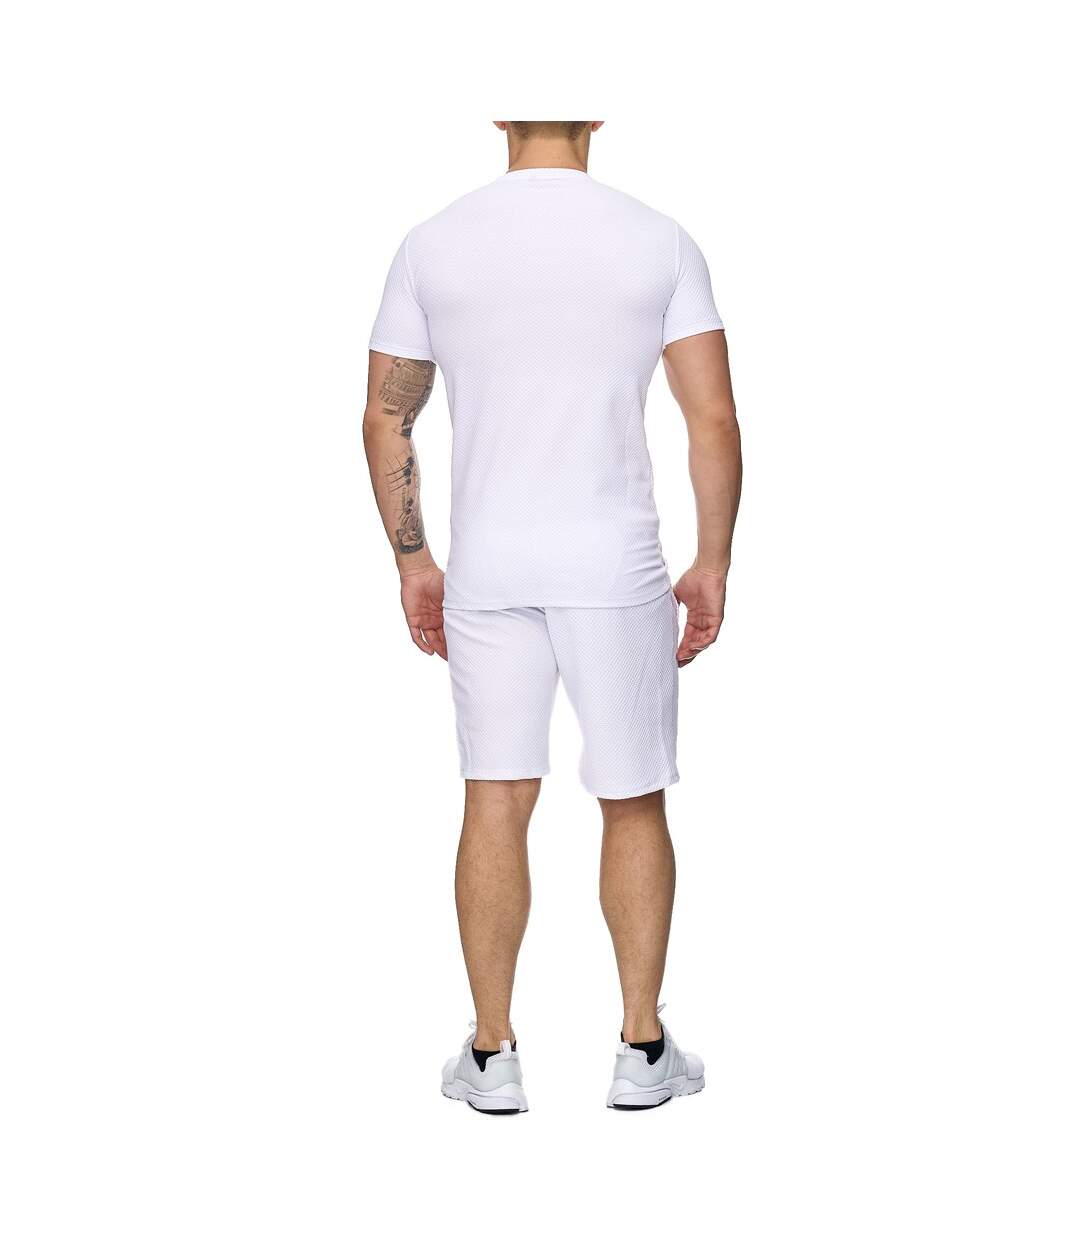 Ensemble short sportswear Survêtement 1013 blanc